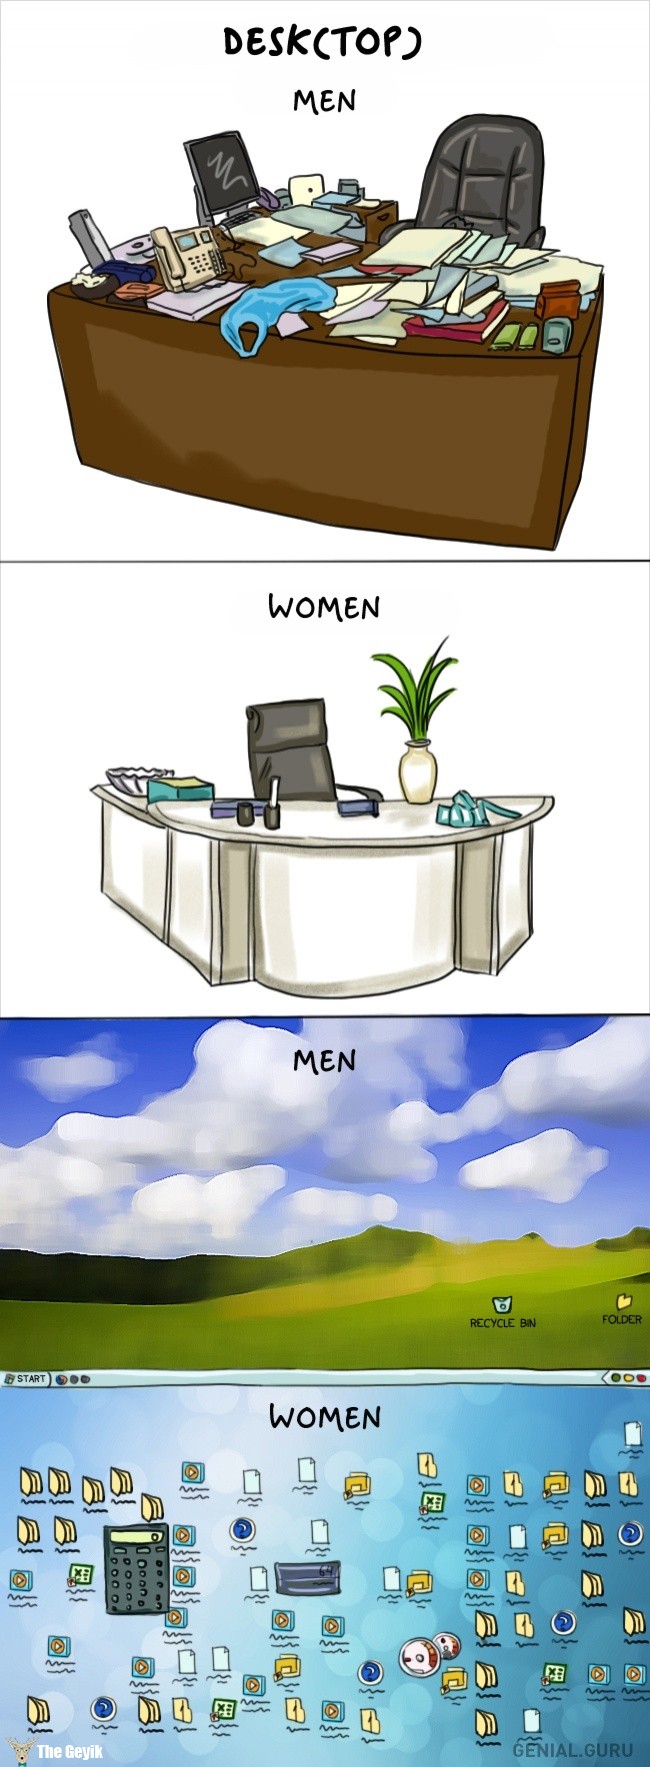 erkekler ve kadınlar arasındaki farklar 